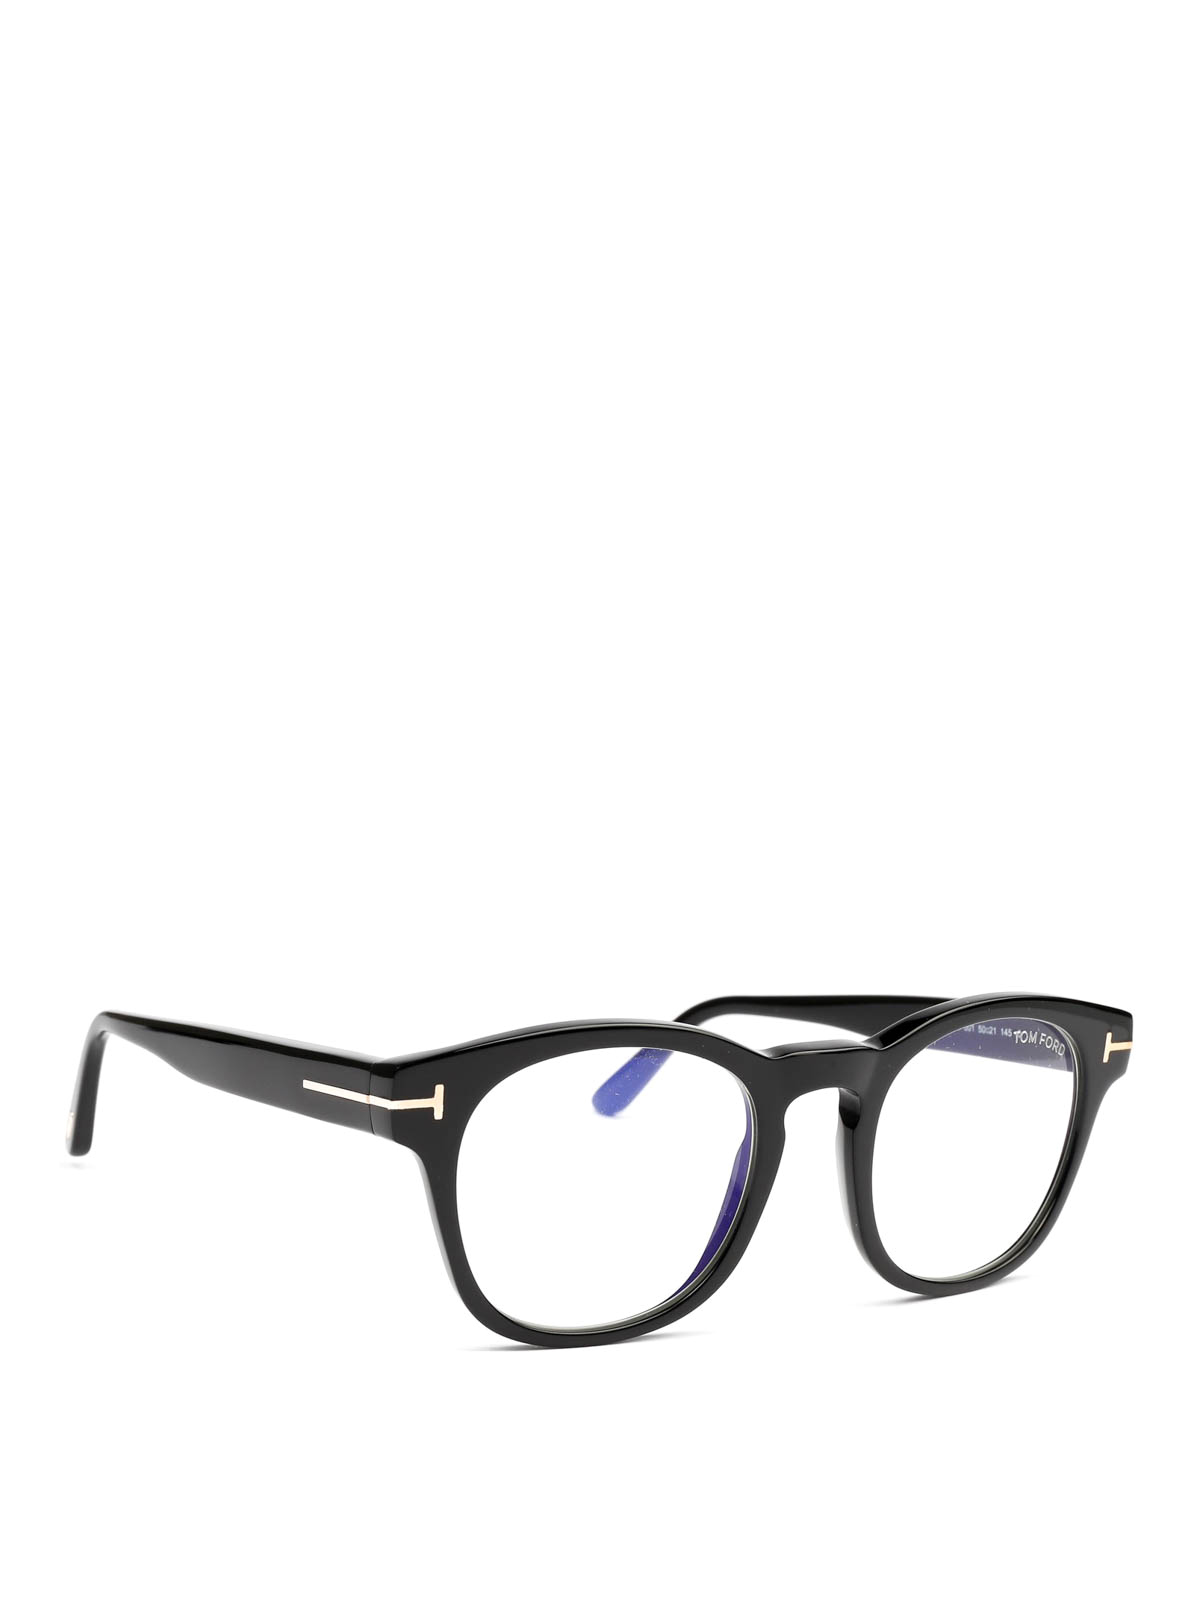 Glasses Tom Ford - Black thick round frame glasses - FT5543B001